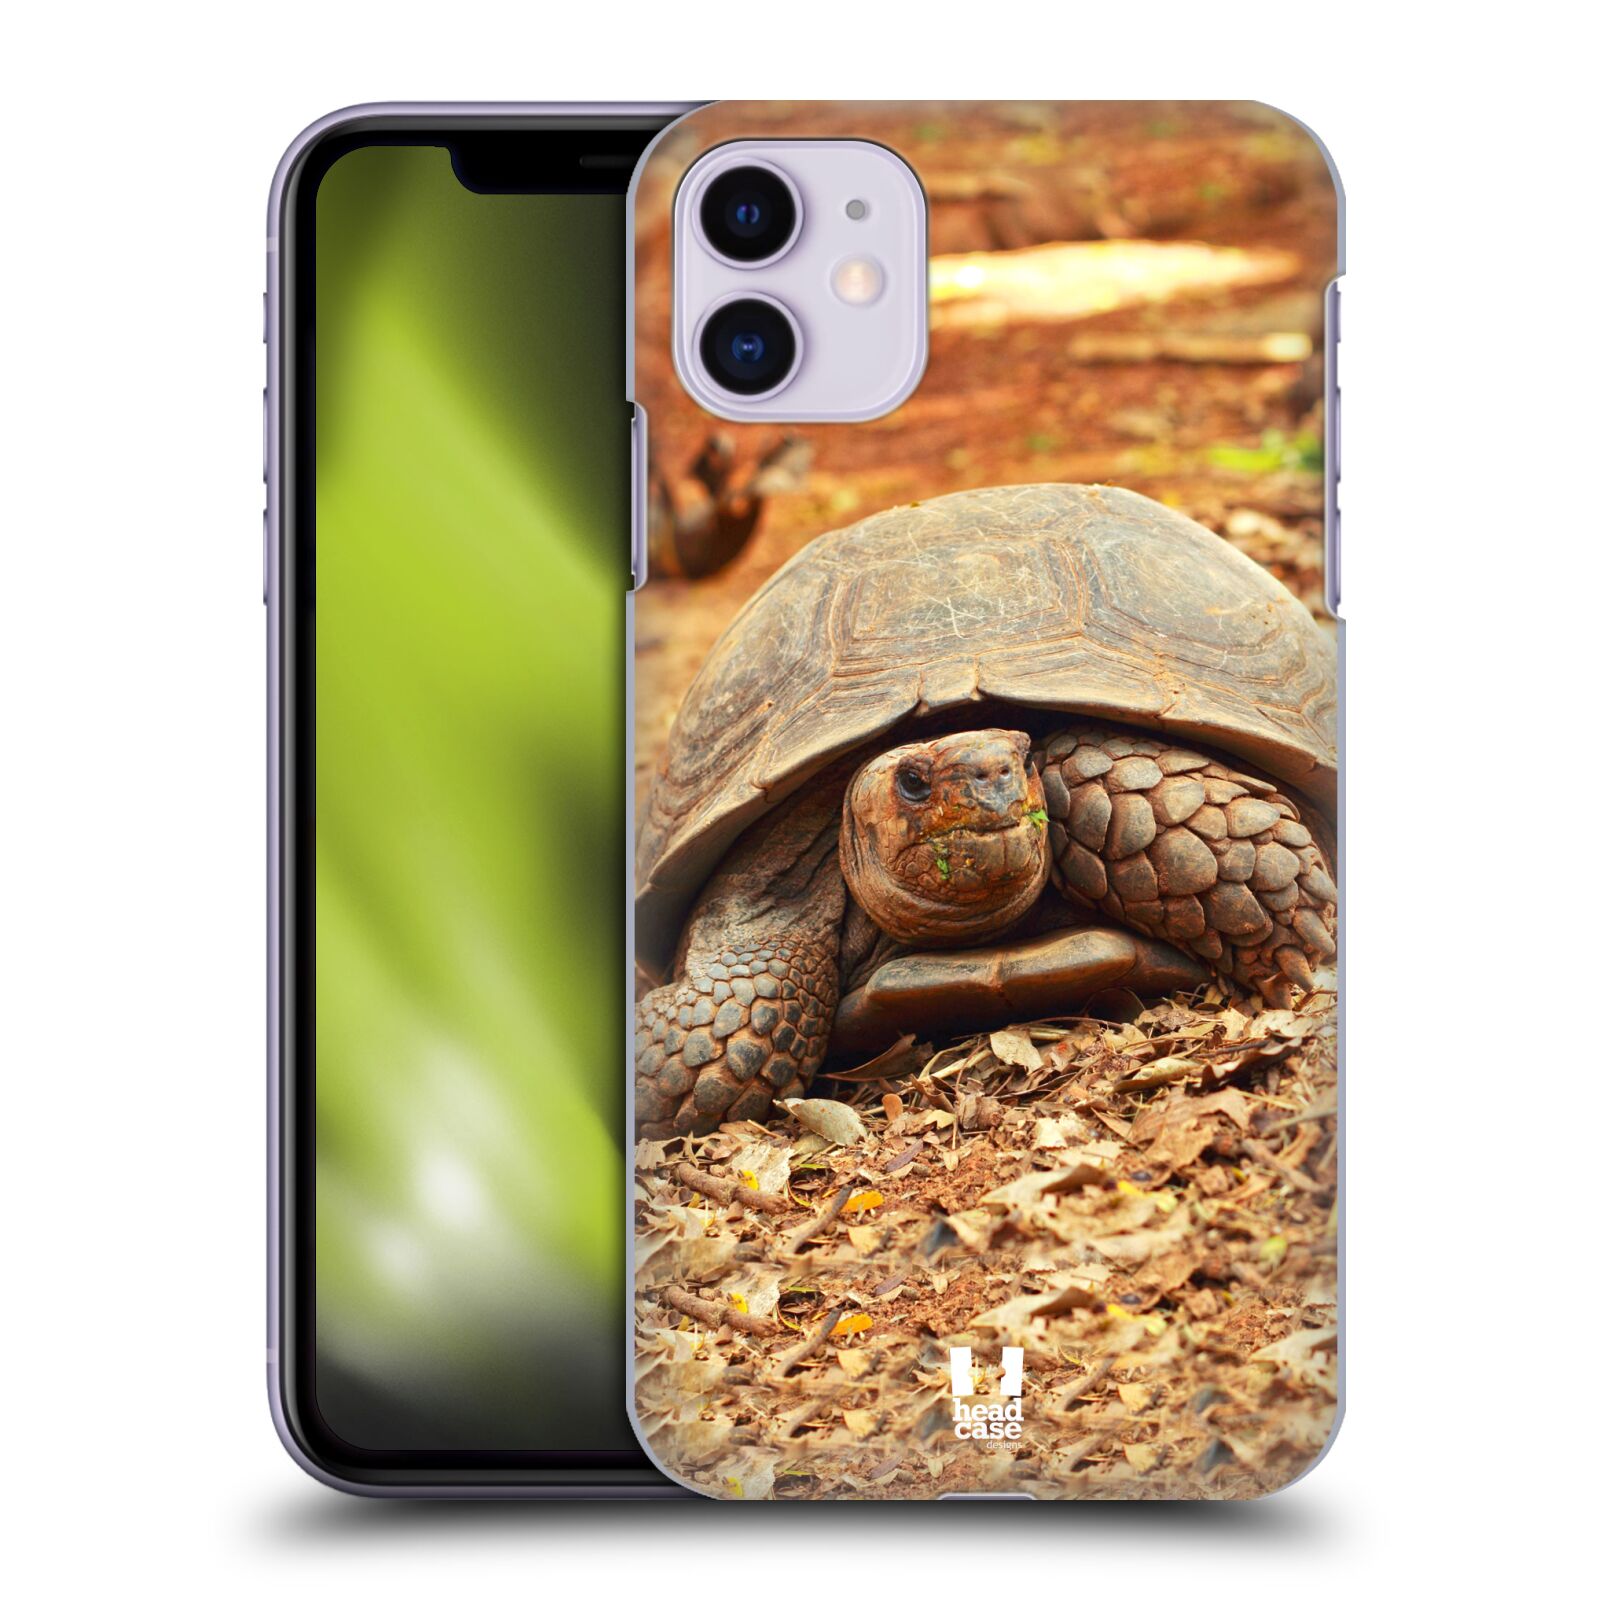 Pouzdro na mobil Apple Iphone 11 - HEAD CASE - vzor slavná zvířata foto želva